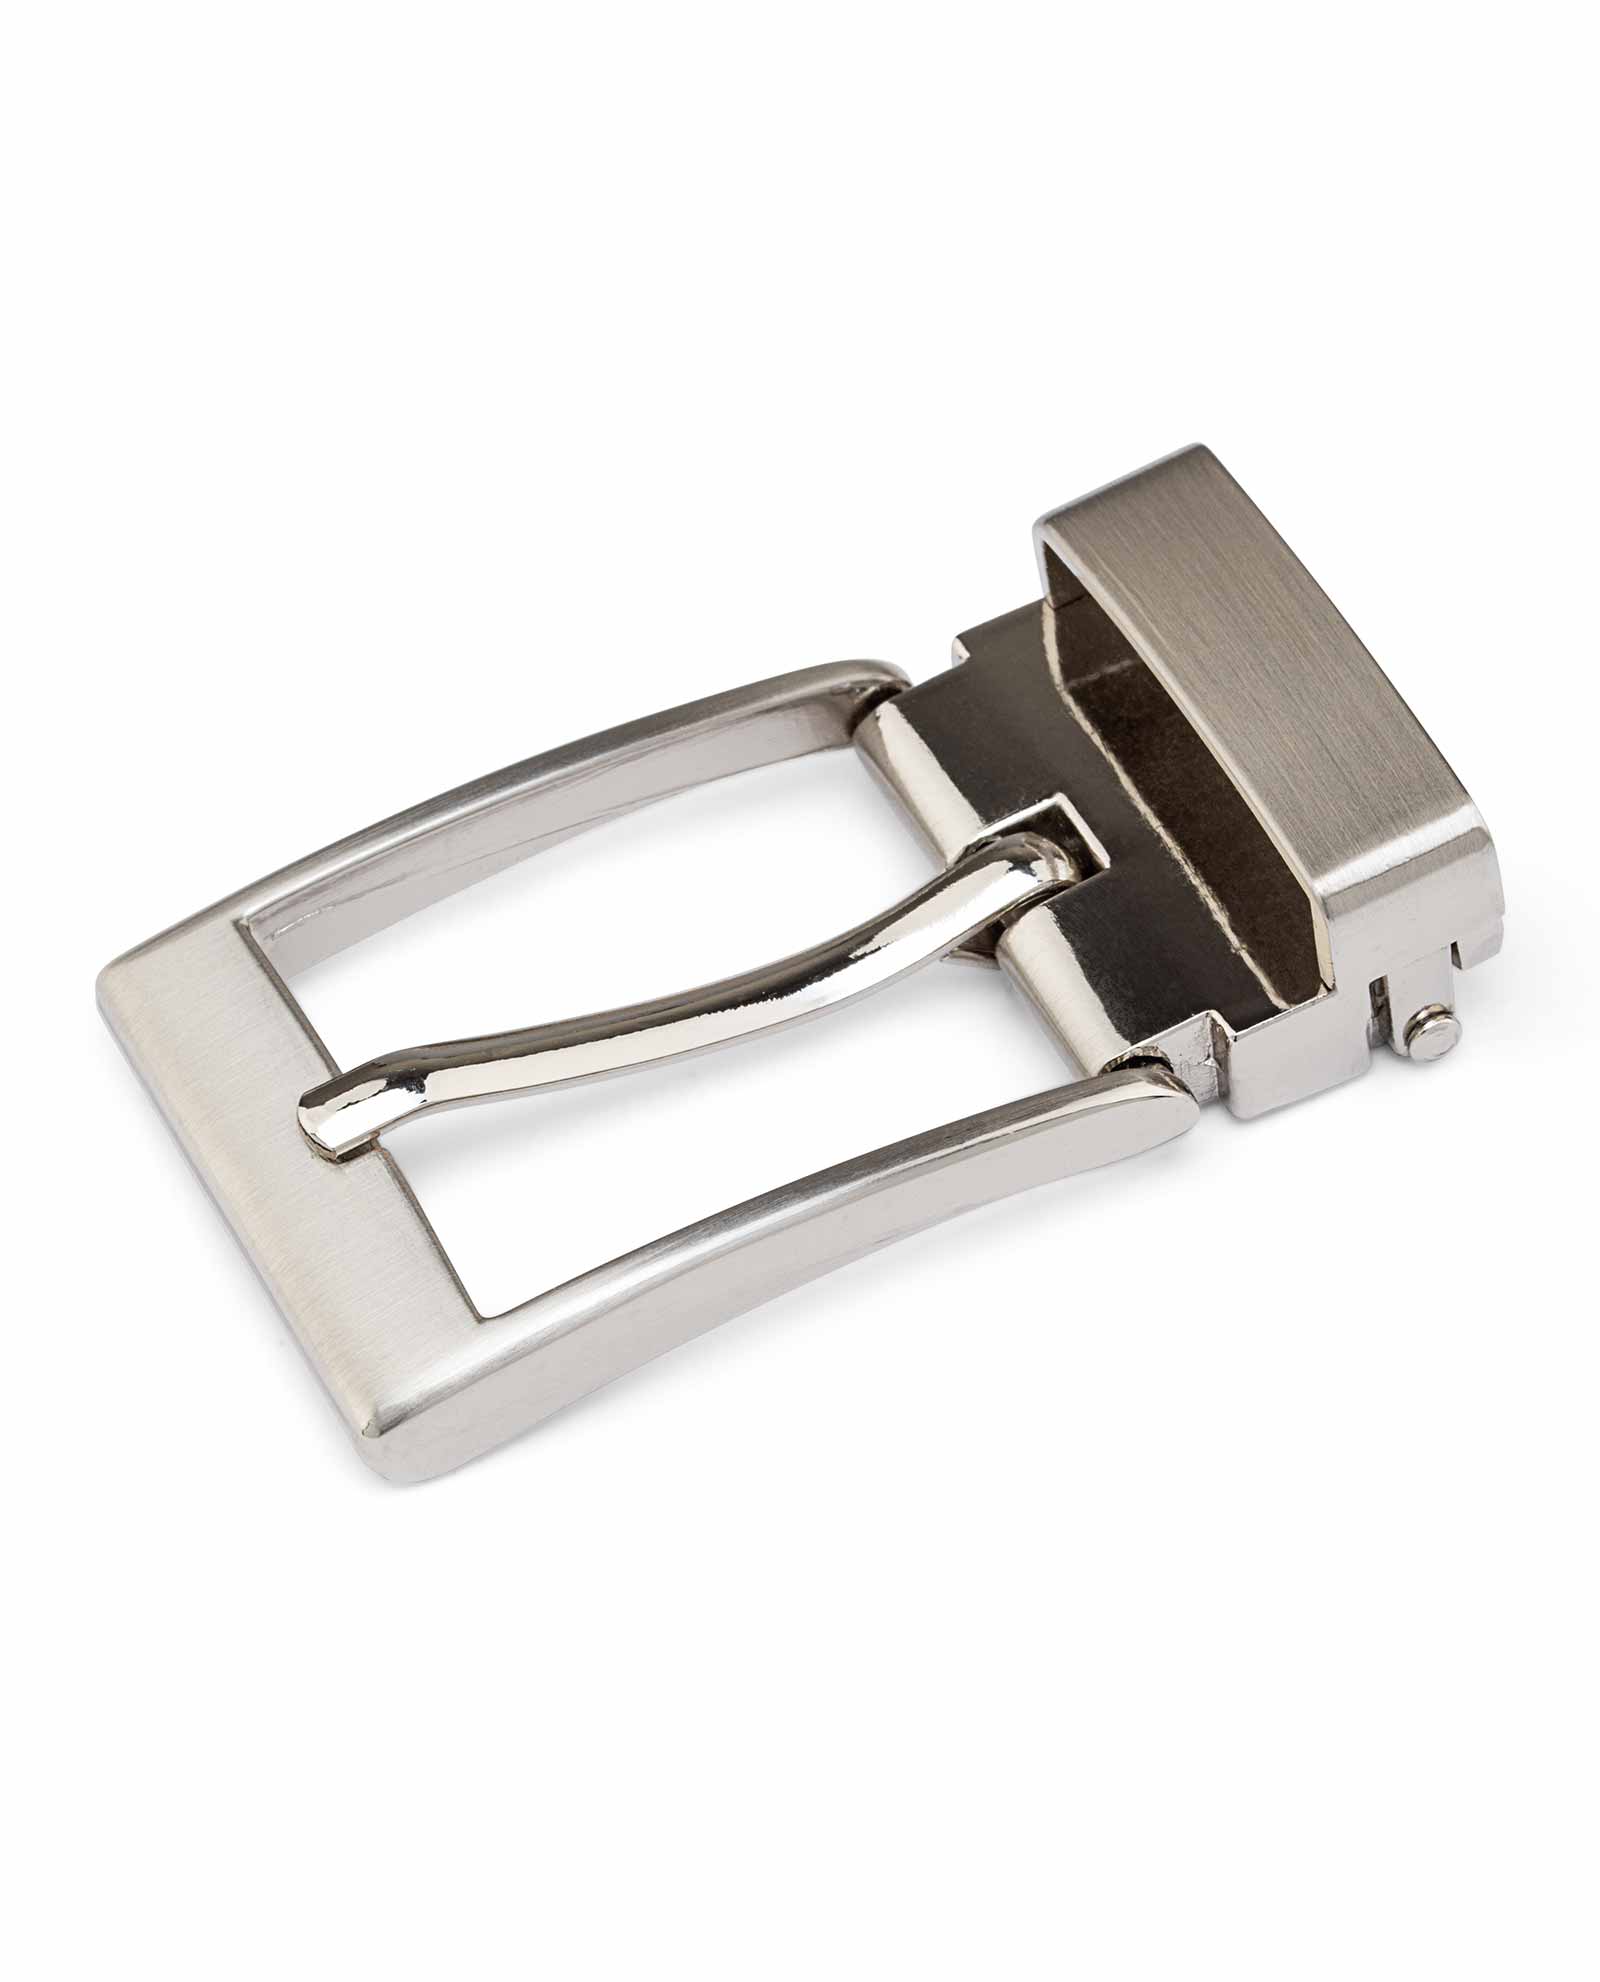 Buy Small Belt Buckle 30 mm - Silver nickel - LeatheBeltsOnline.com